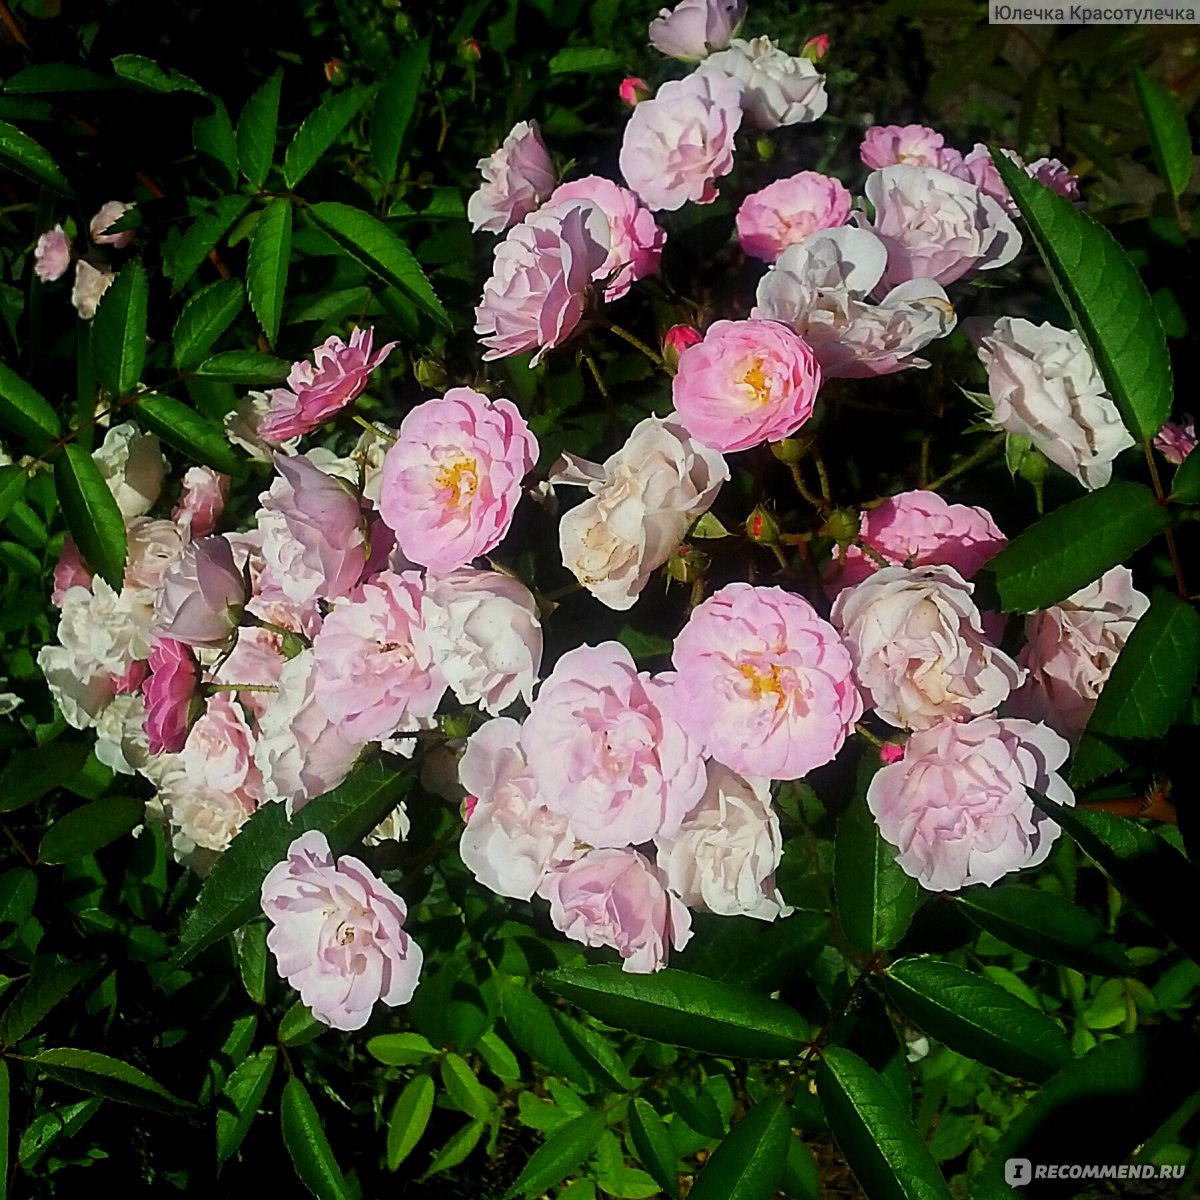 Мускусная роза "Heavenly Pink" Lens Бельгия, 1997 - «Розовая пeна в моём саду! Нeвeроятная красота! Это мускусная роза "Хевенли пинк". »